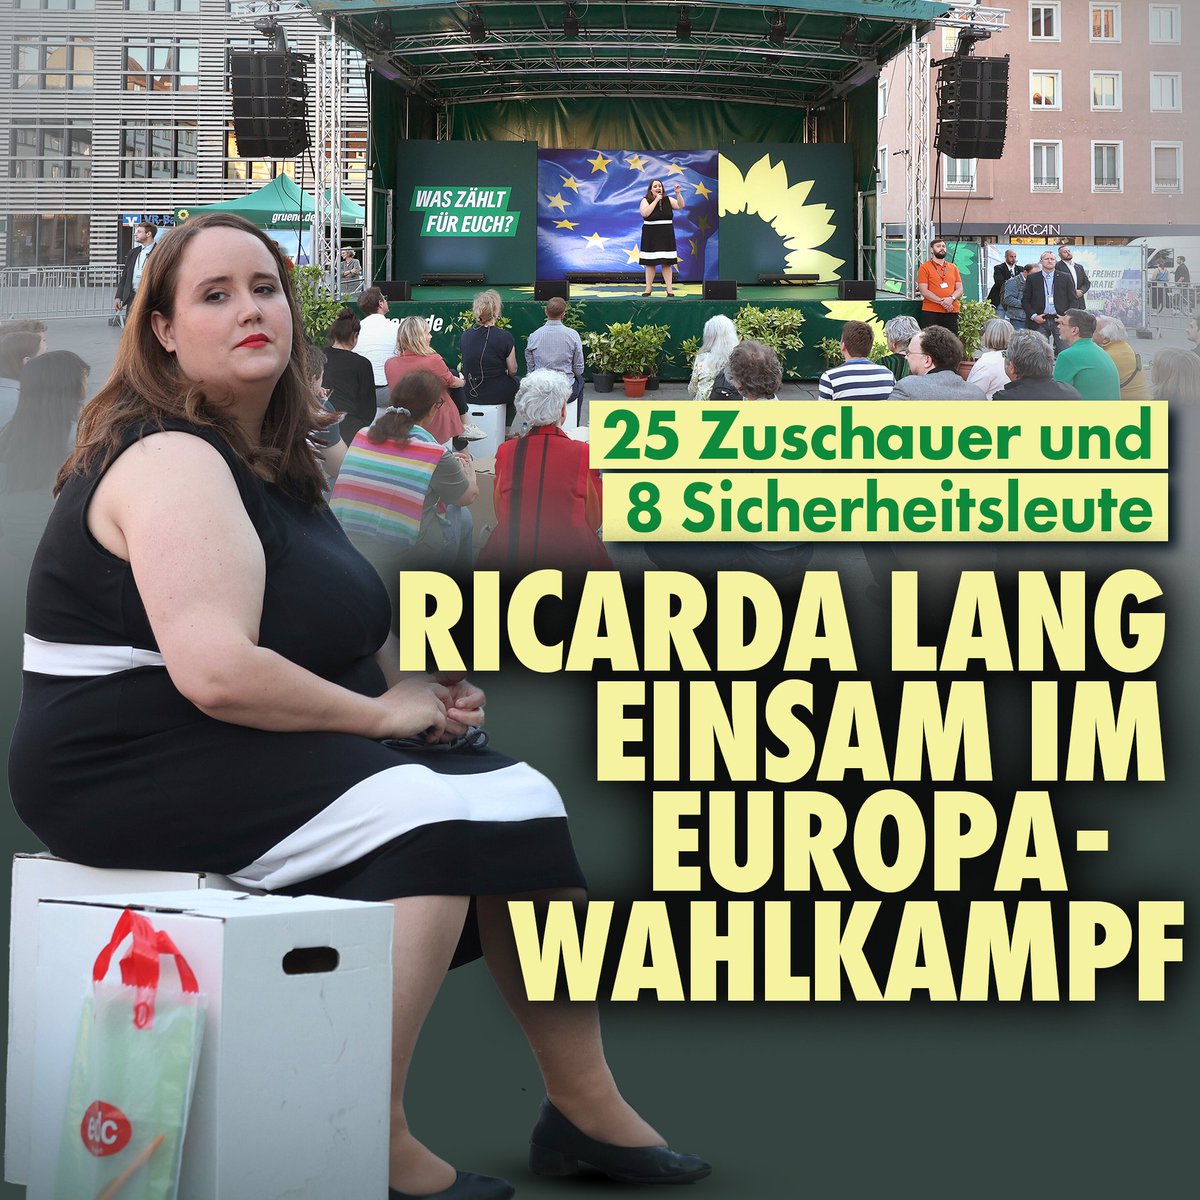 Das Interesse am Europa-Wahlkampf von Ricarda Lang fiel in Würzburg nicht üppig aus. Auf einem Foto sieht man acht Sicherheitsleute neben der Bühne, Ricarda Lang sowie 25 Zuschauer vor der Bühne.
nius.de/politik/25-zus…